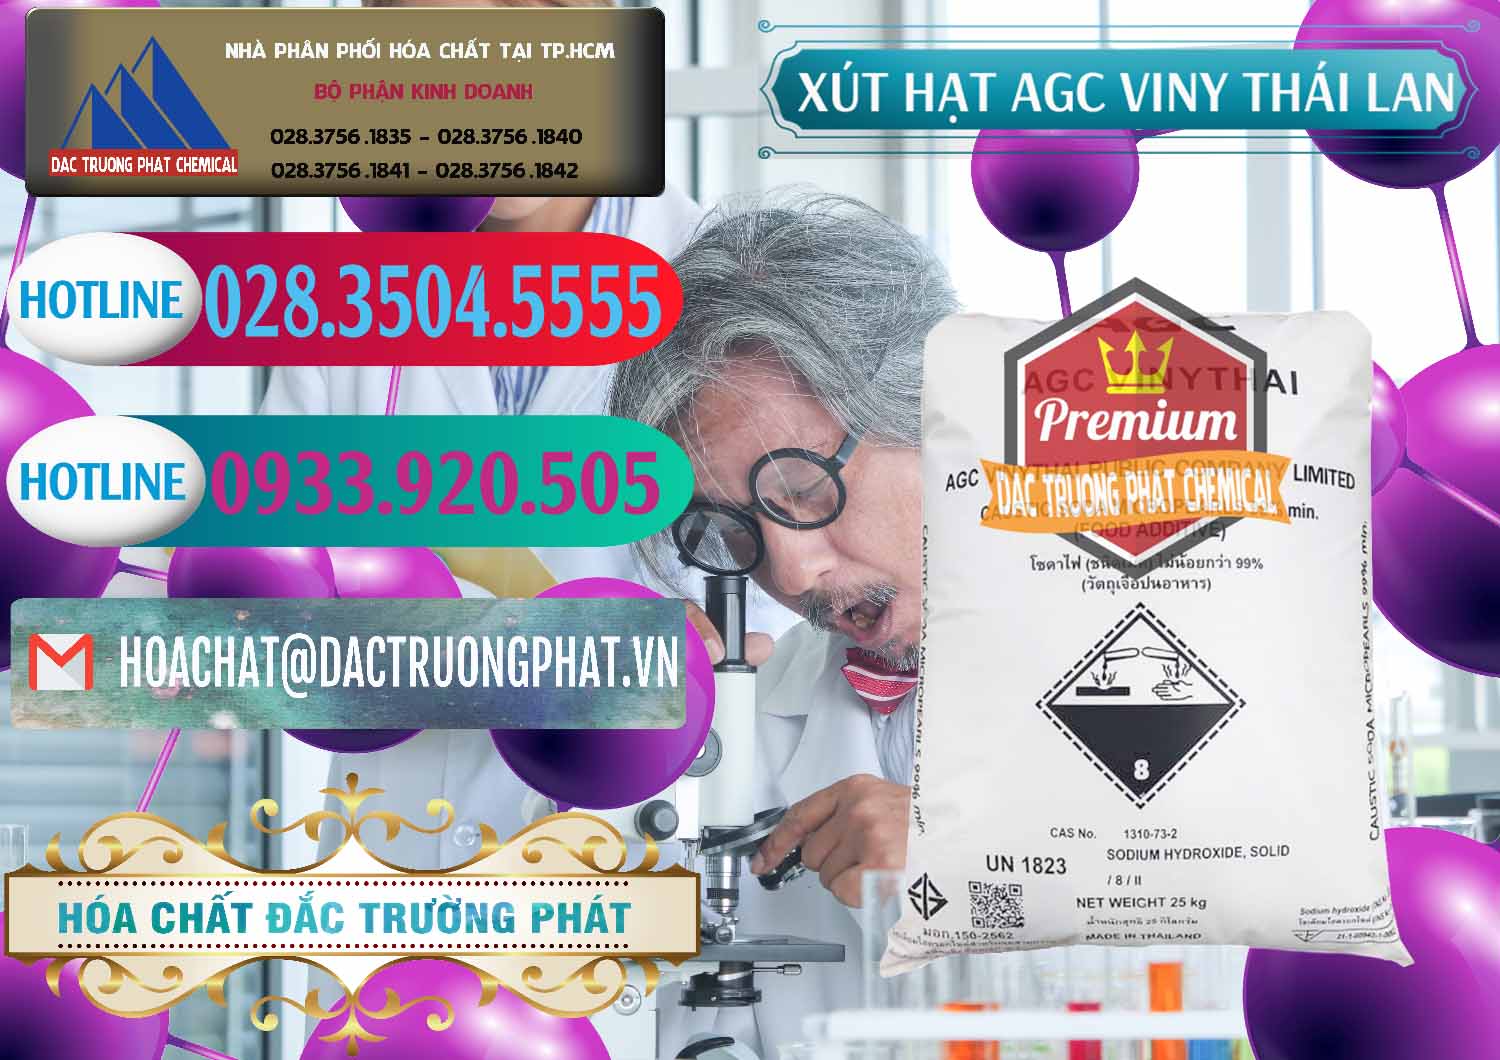 Cty chuyên phân phối và bán Xút Hạt - NaOH Bột 99% AGC Viny Thái Lan - 0399 - Chuyên phân phối _ kinh doanh hóa chất tại TP.HCM - truongphat.vn